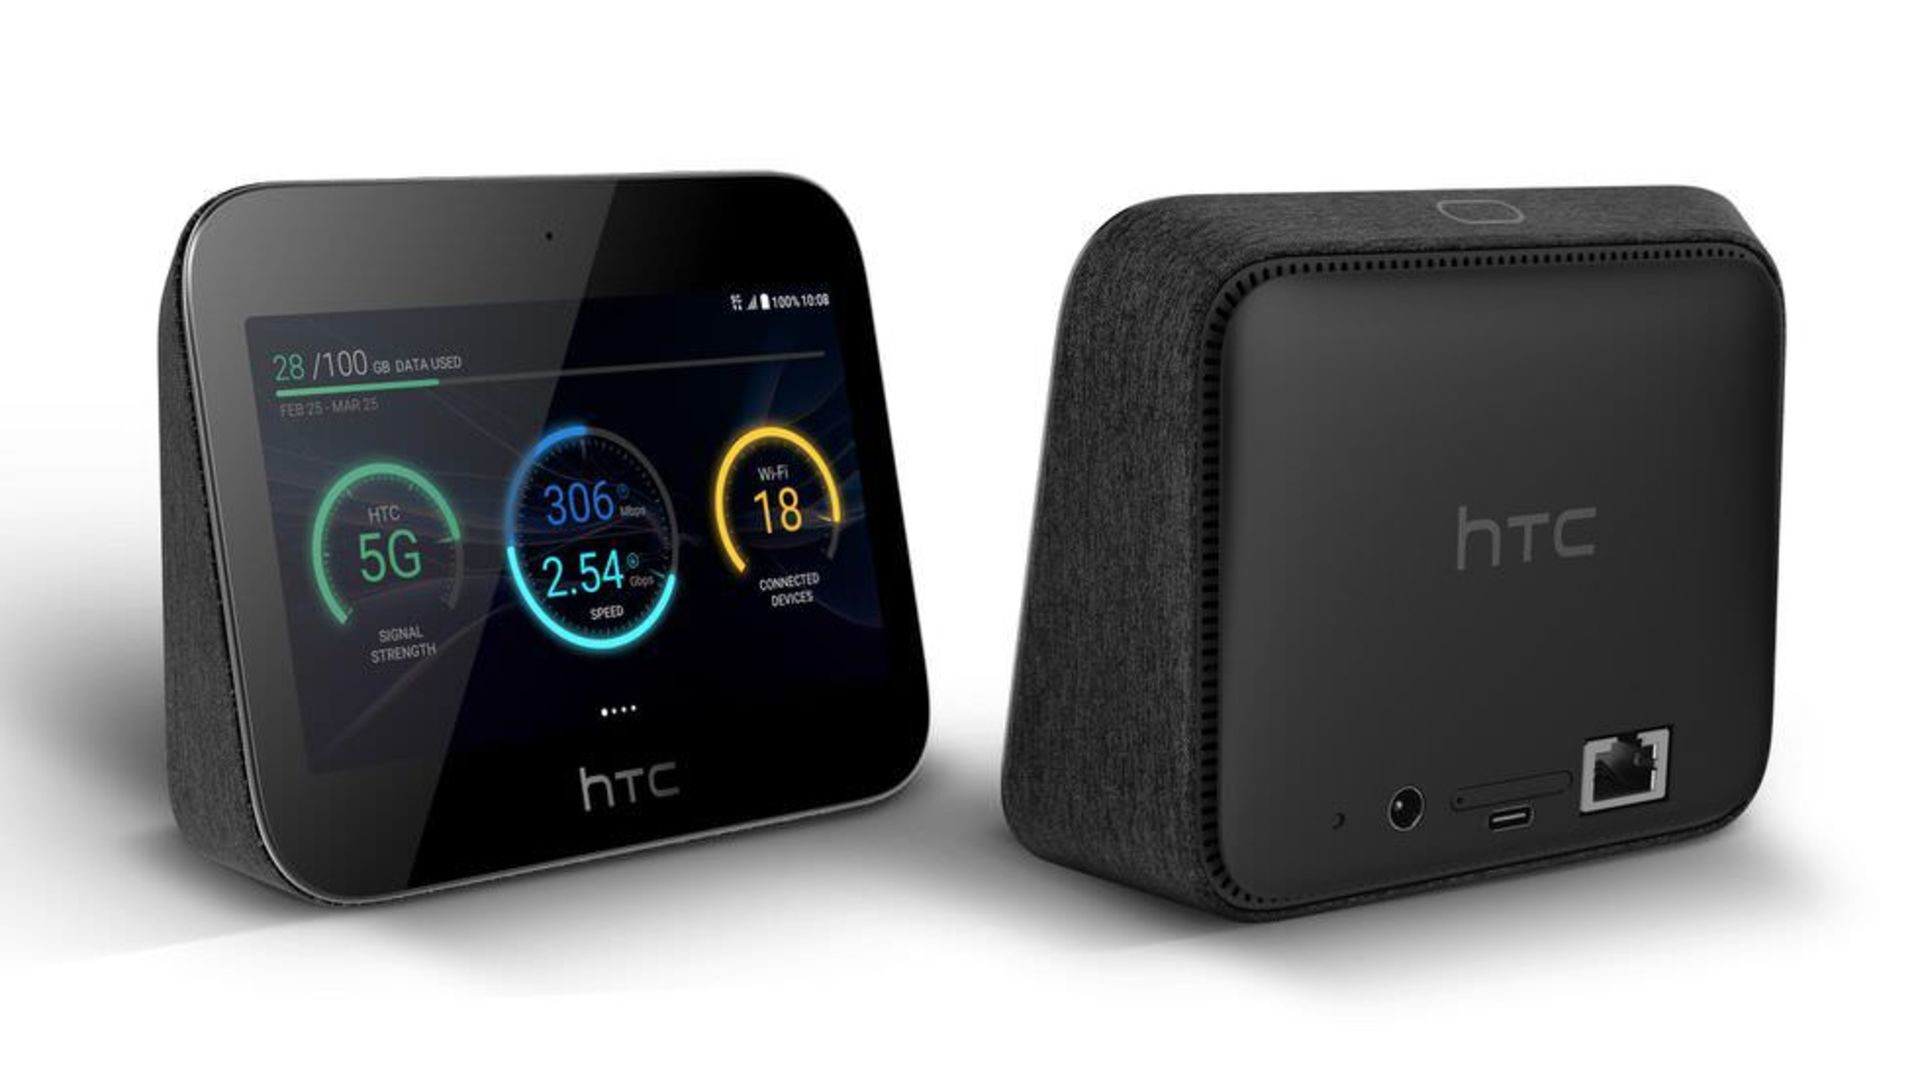 HTC فناوری 5G را با یک دستگاه هات اسپات به بازار عرضه کرده است.